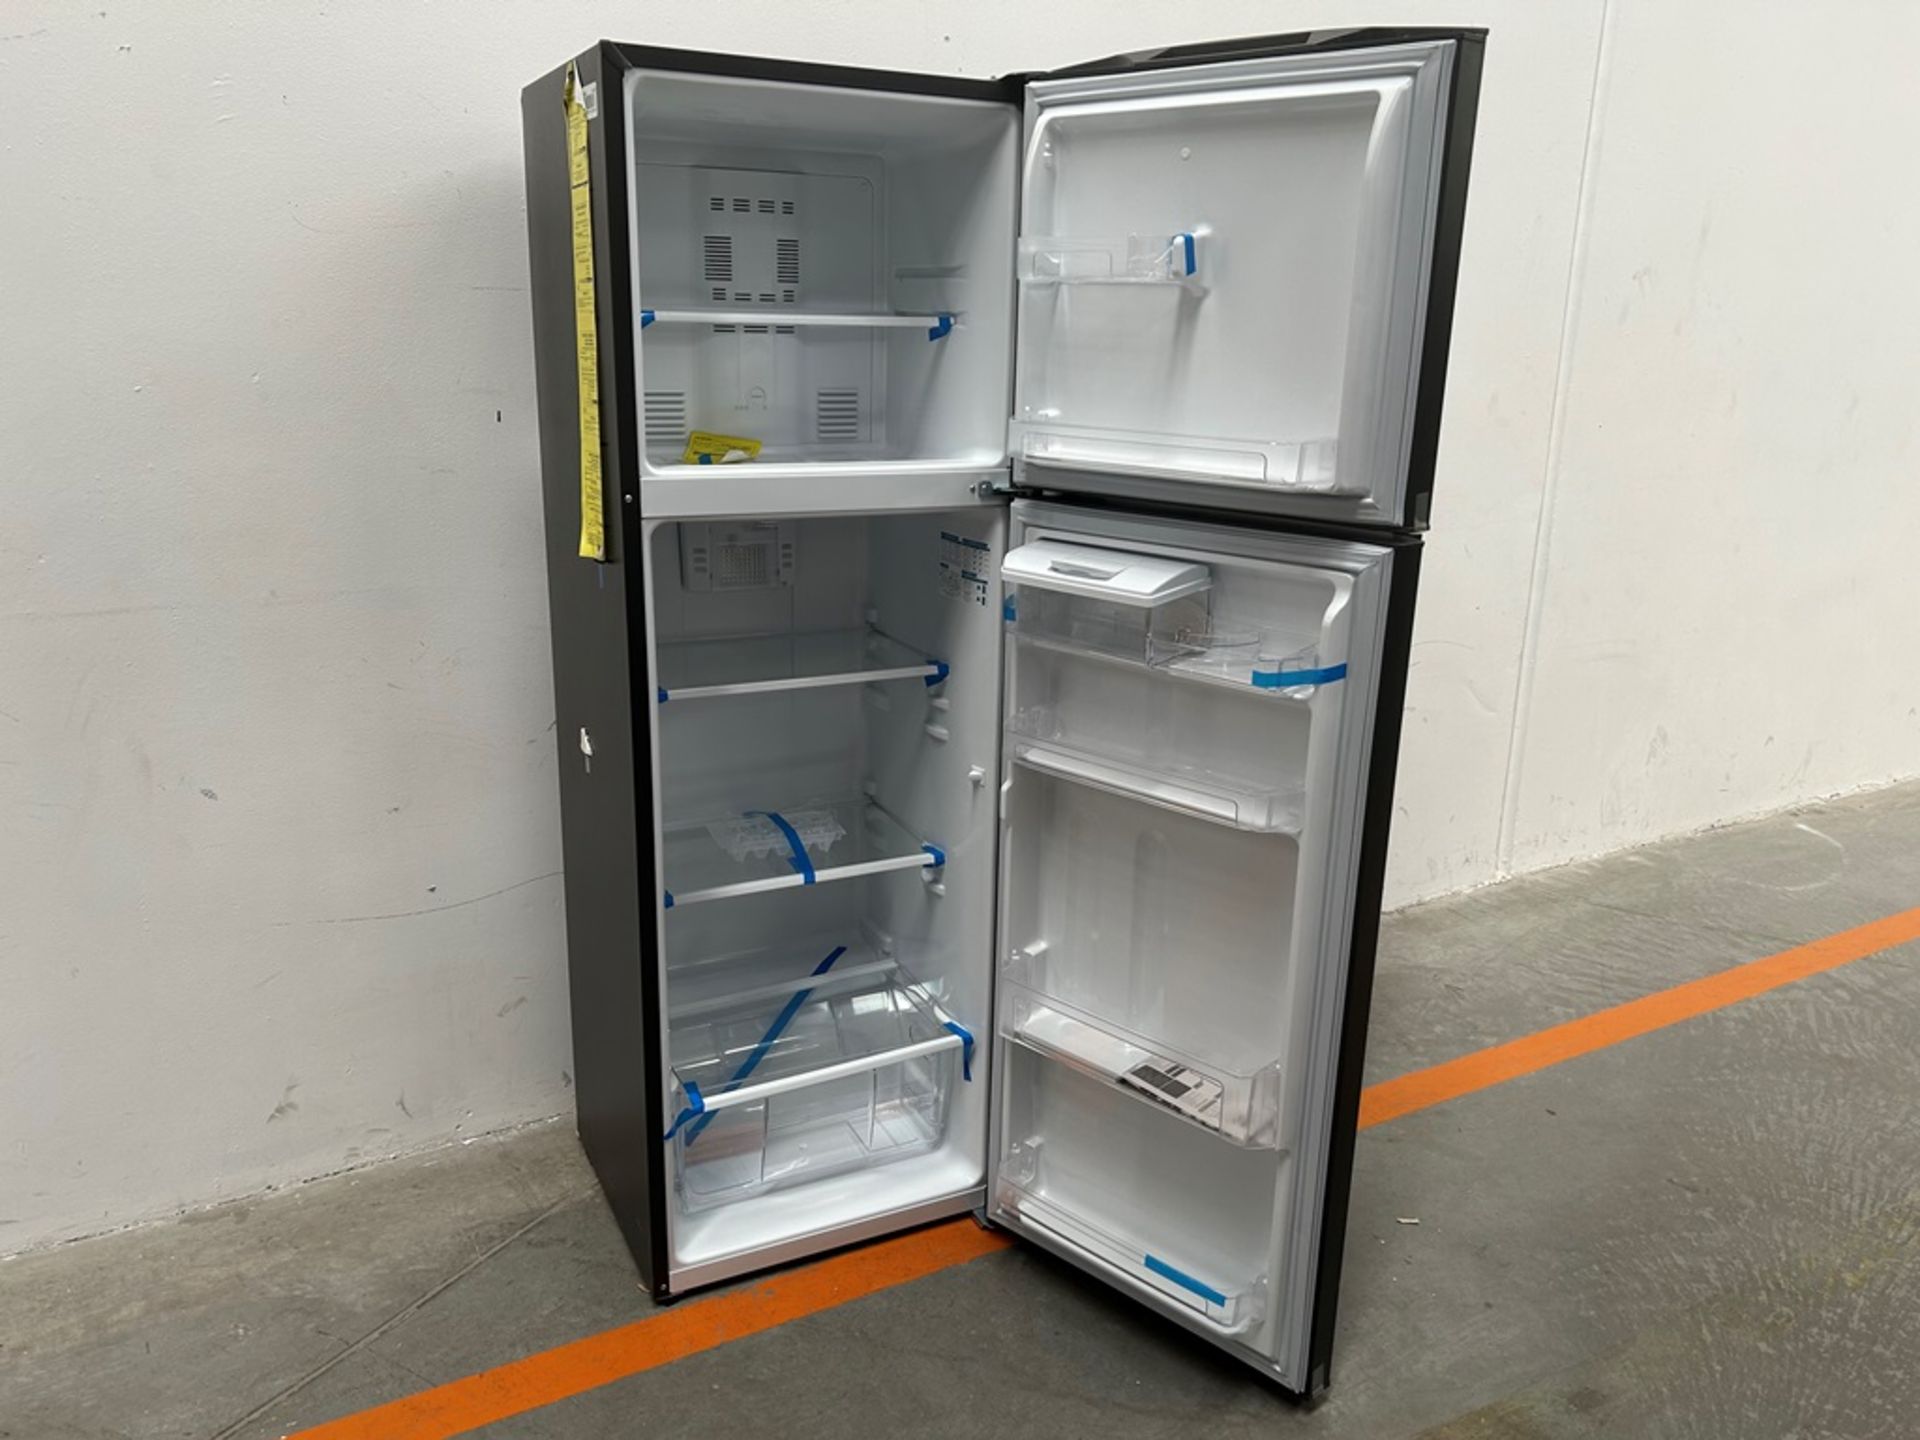 Lote de 2 refrigeradores contiene: 1 refrigerador Marca MABE, Modelo RME360FVMRMA, Serie 816455, Co - Image 4 of 18